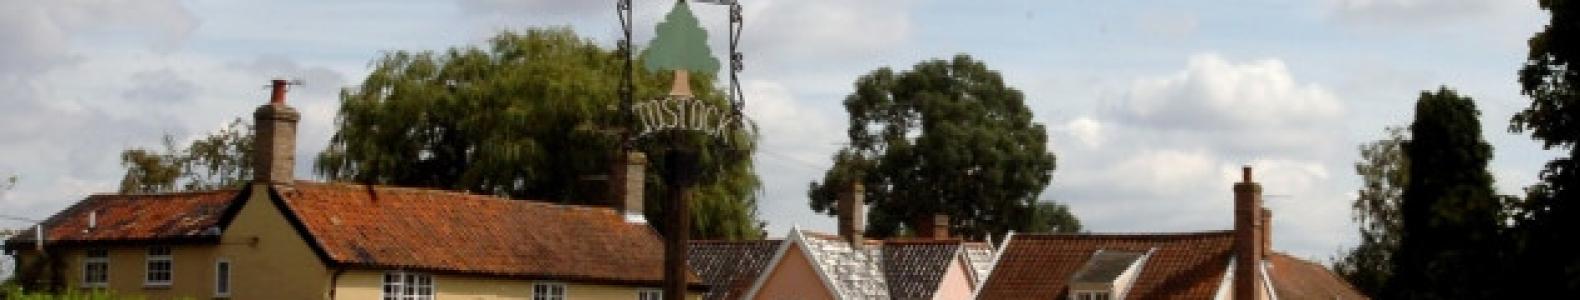 Tostock 